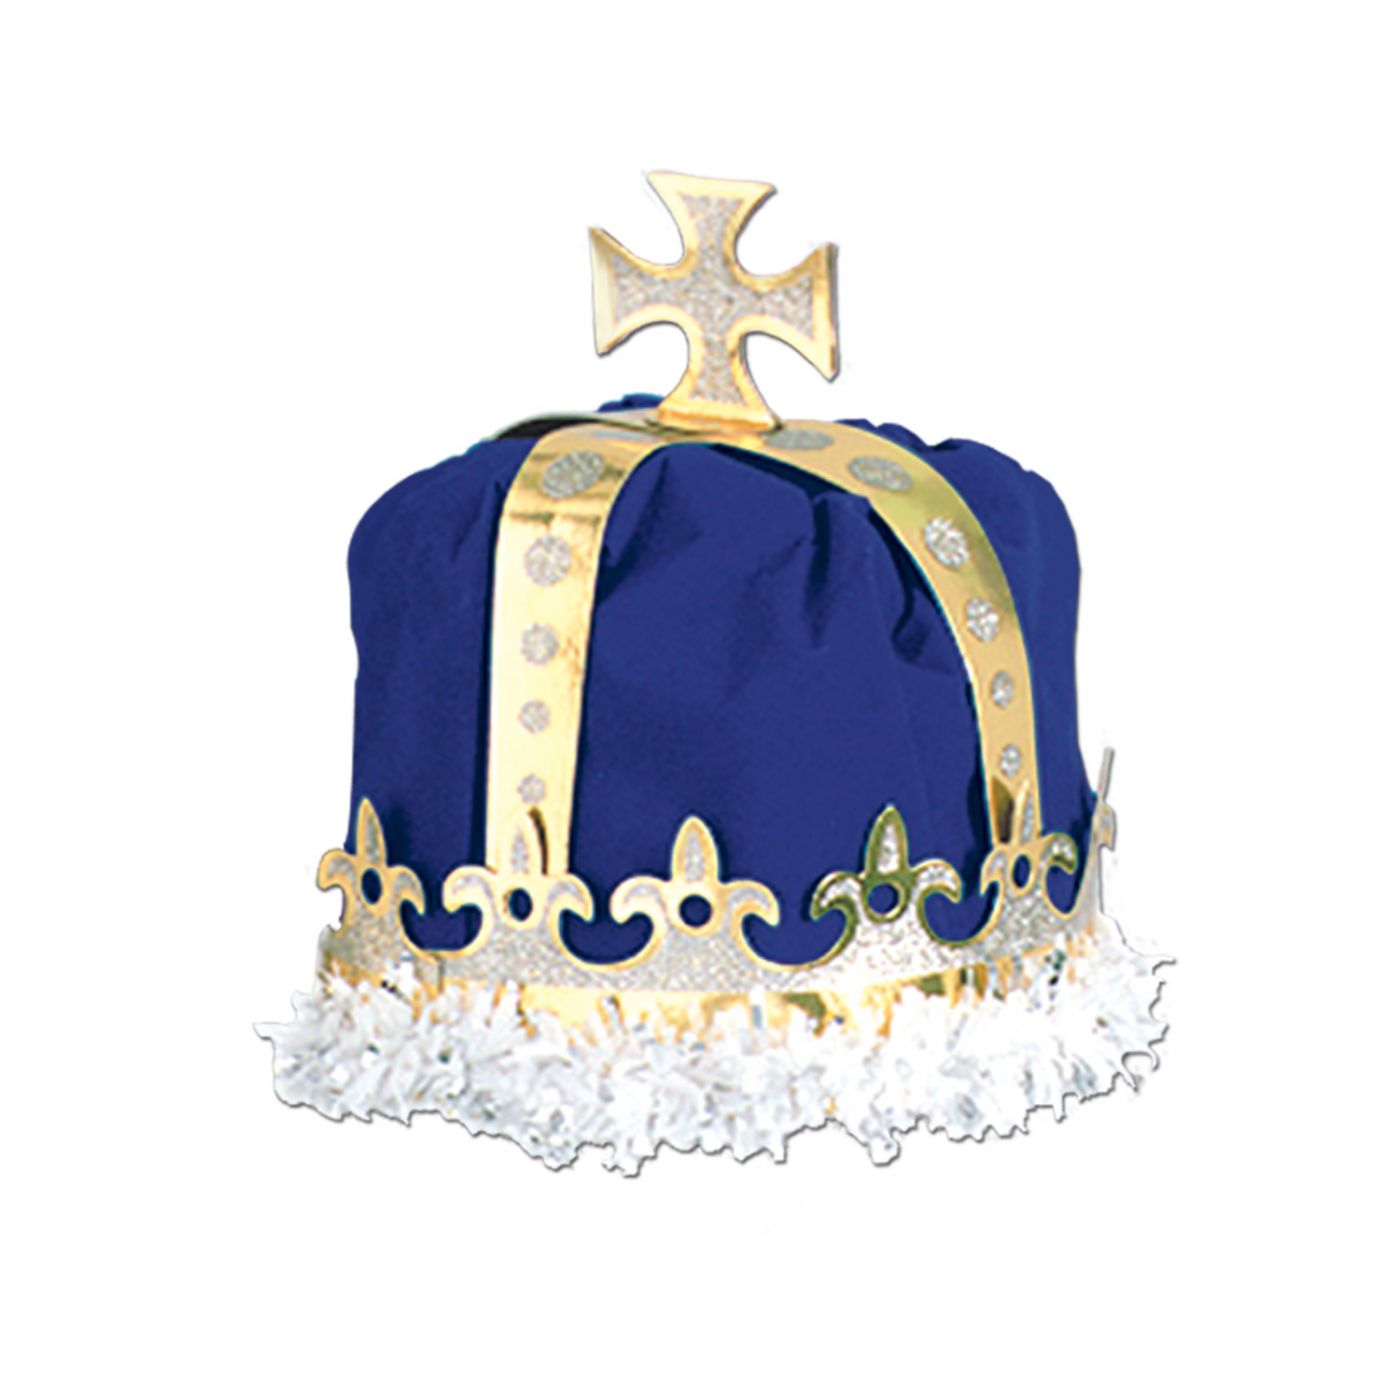 Royal King's Crown image